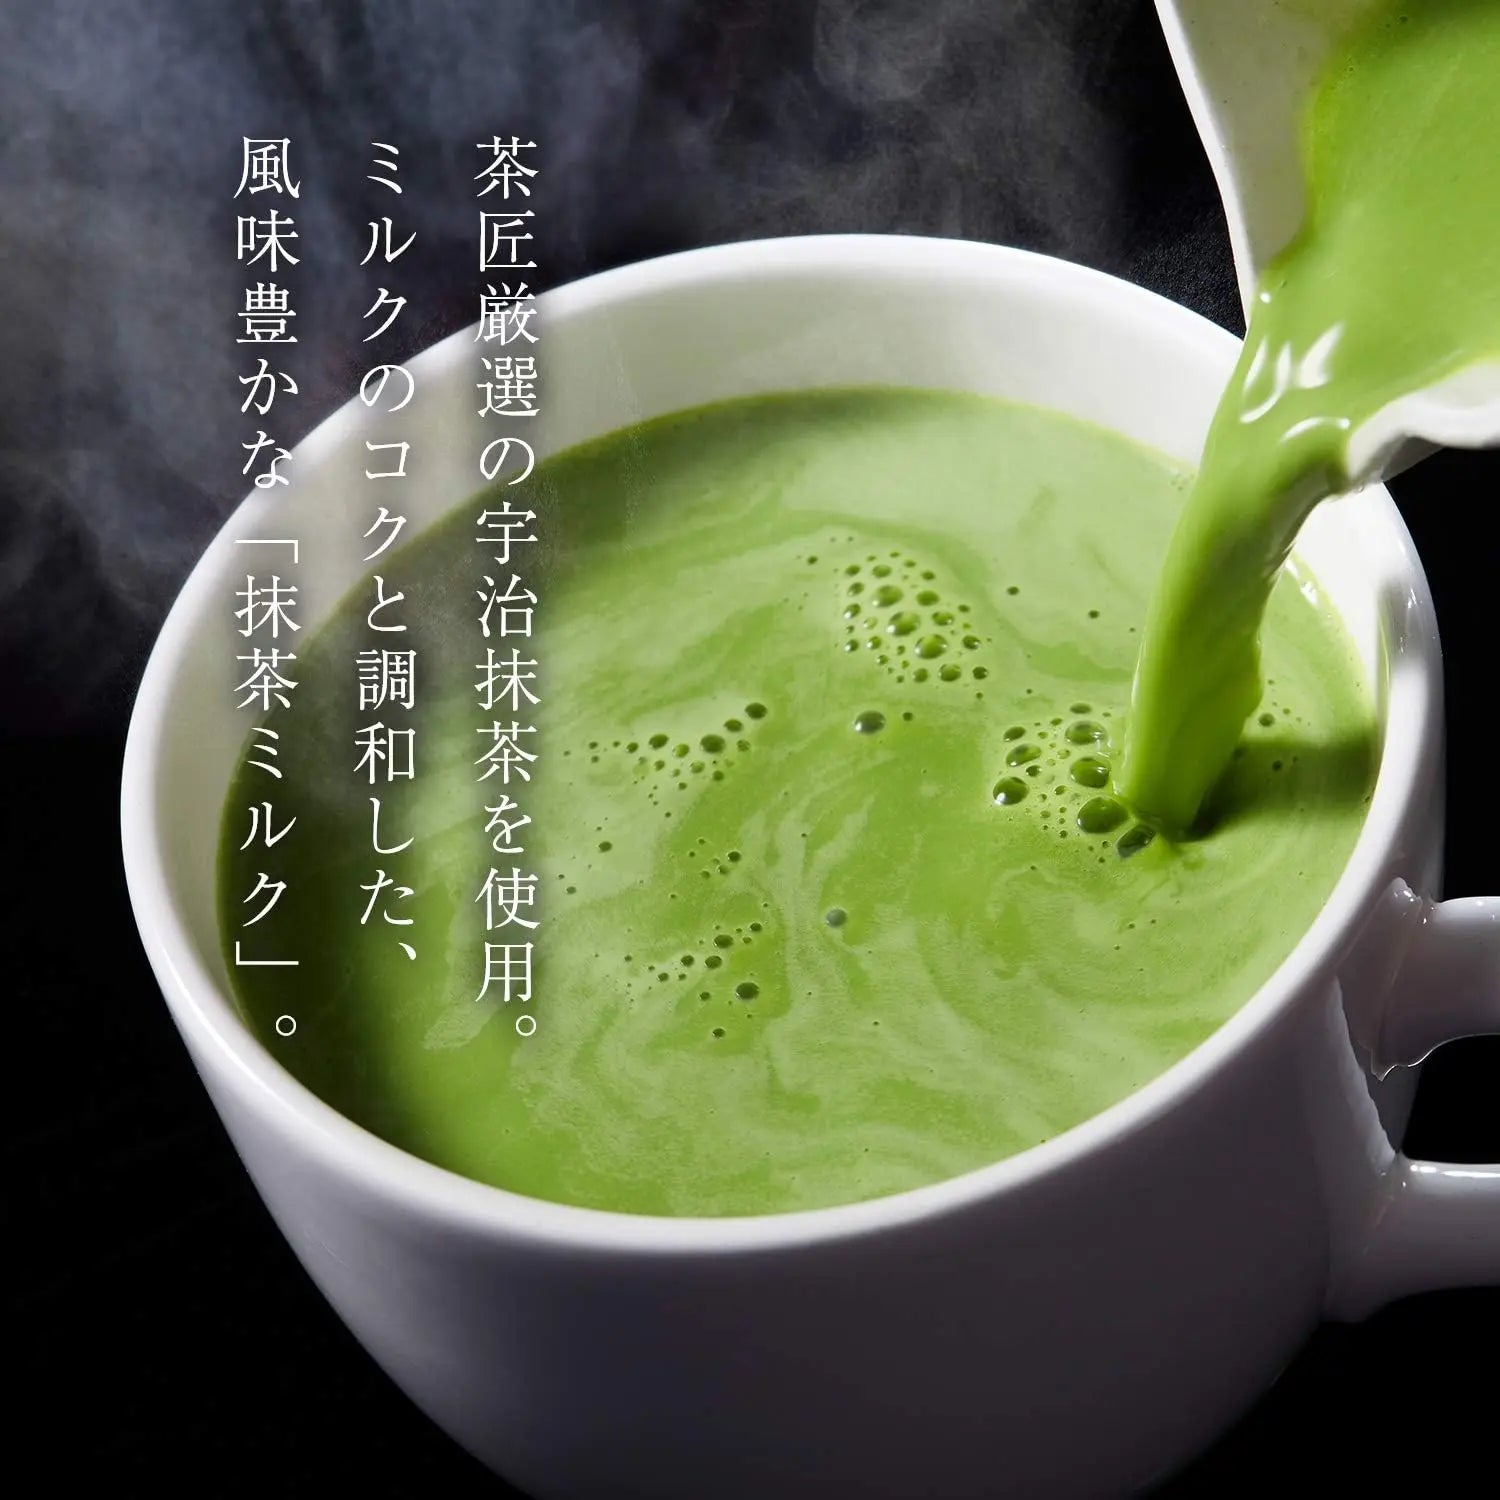 Tsujiri Matcha Milk 190g - Buy Me Japan